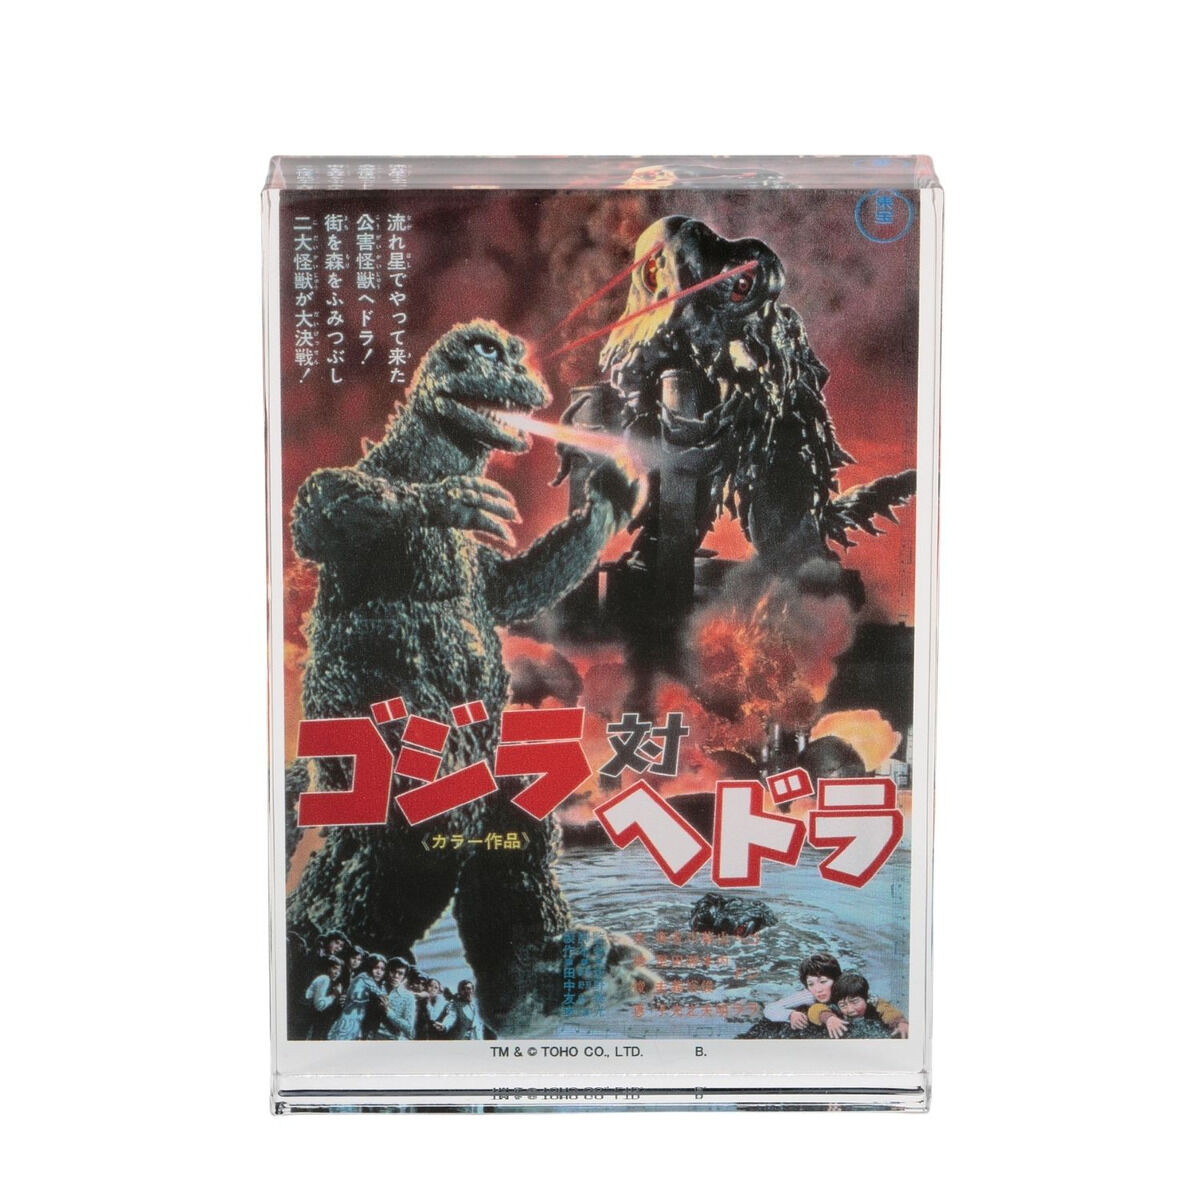 Godzilla vs Megaguirus Kaiju Movie Medal Keychain 2000 From TOHO Japan 